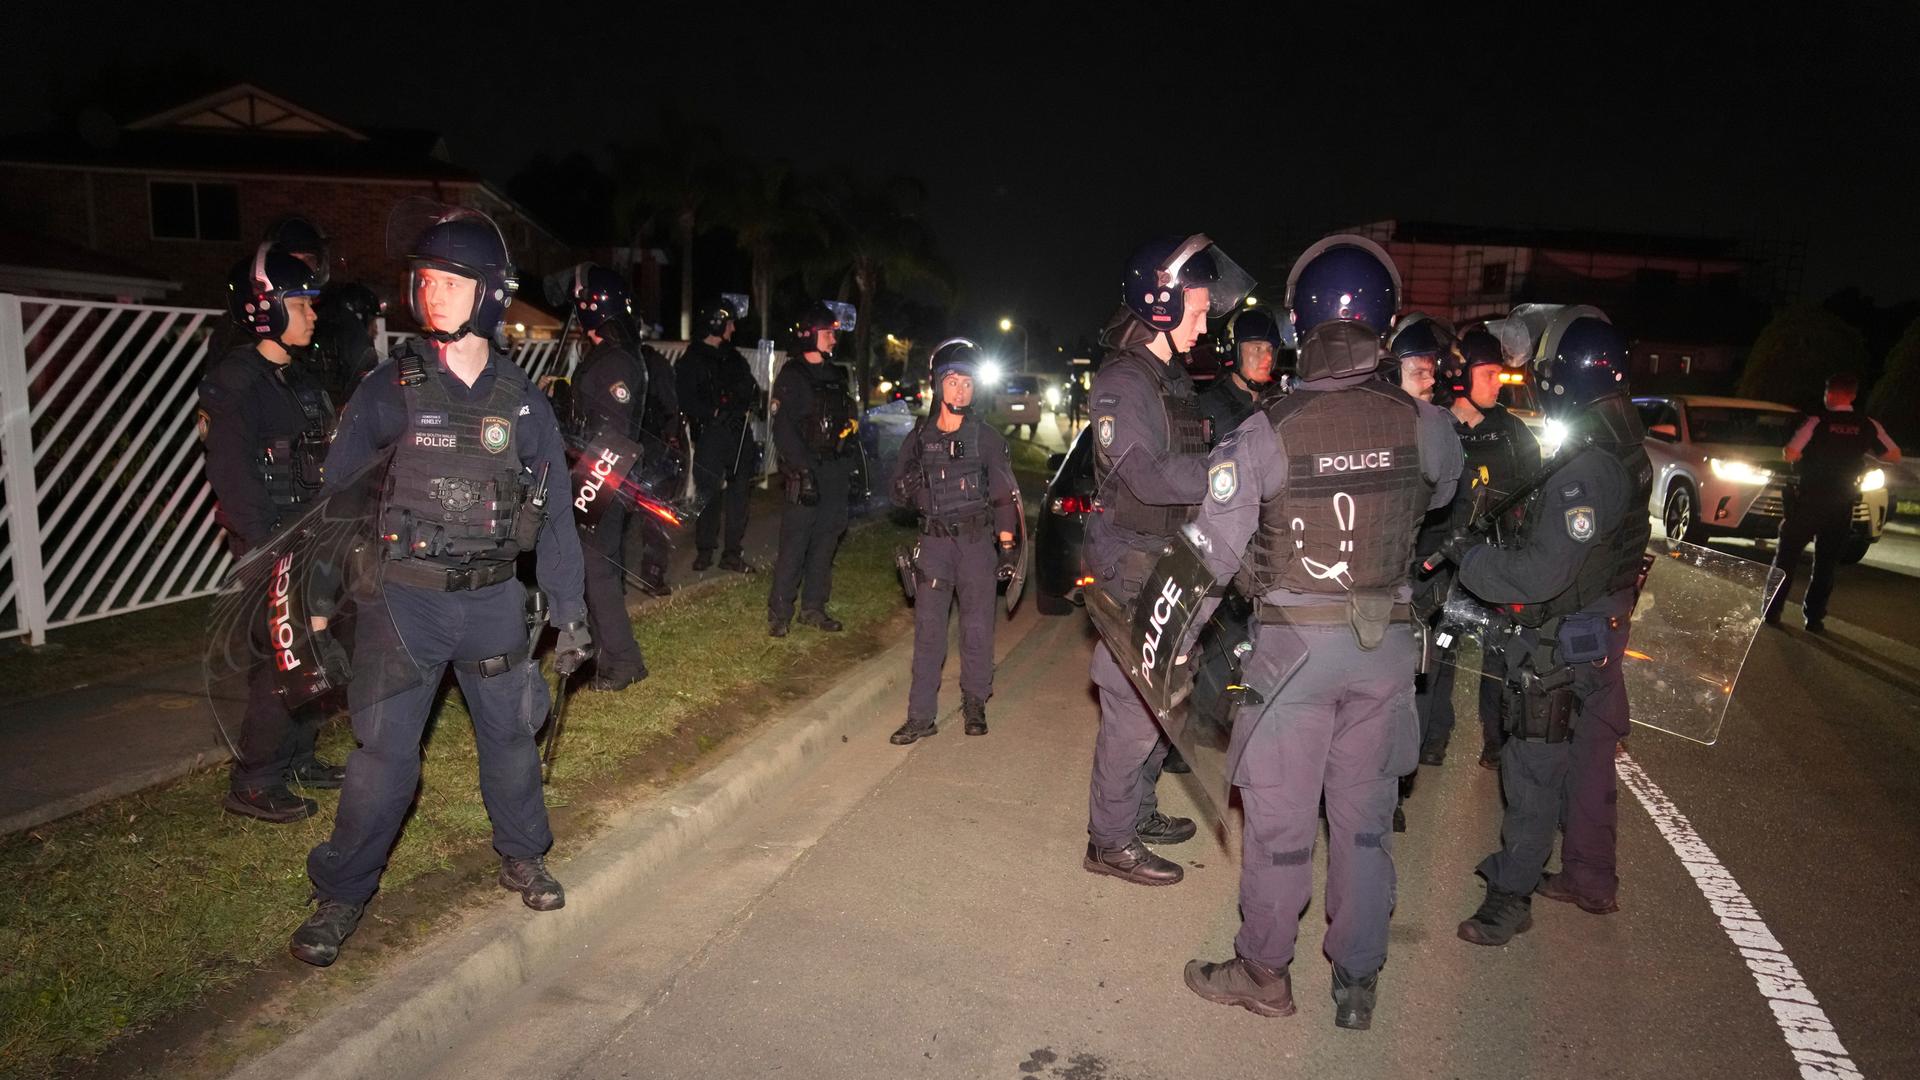 Es ist dunkel: Mehre bewaffnete Polizisten in dunkleblauen Uniformen mit Helmen und Schildern und stehen an einer beleuchteten Straße.